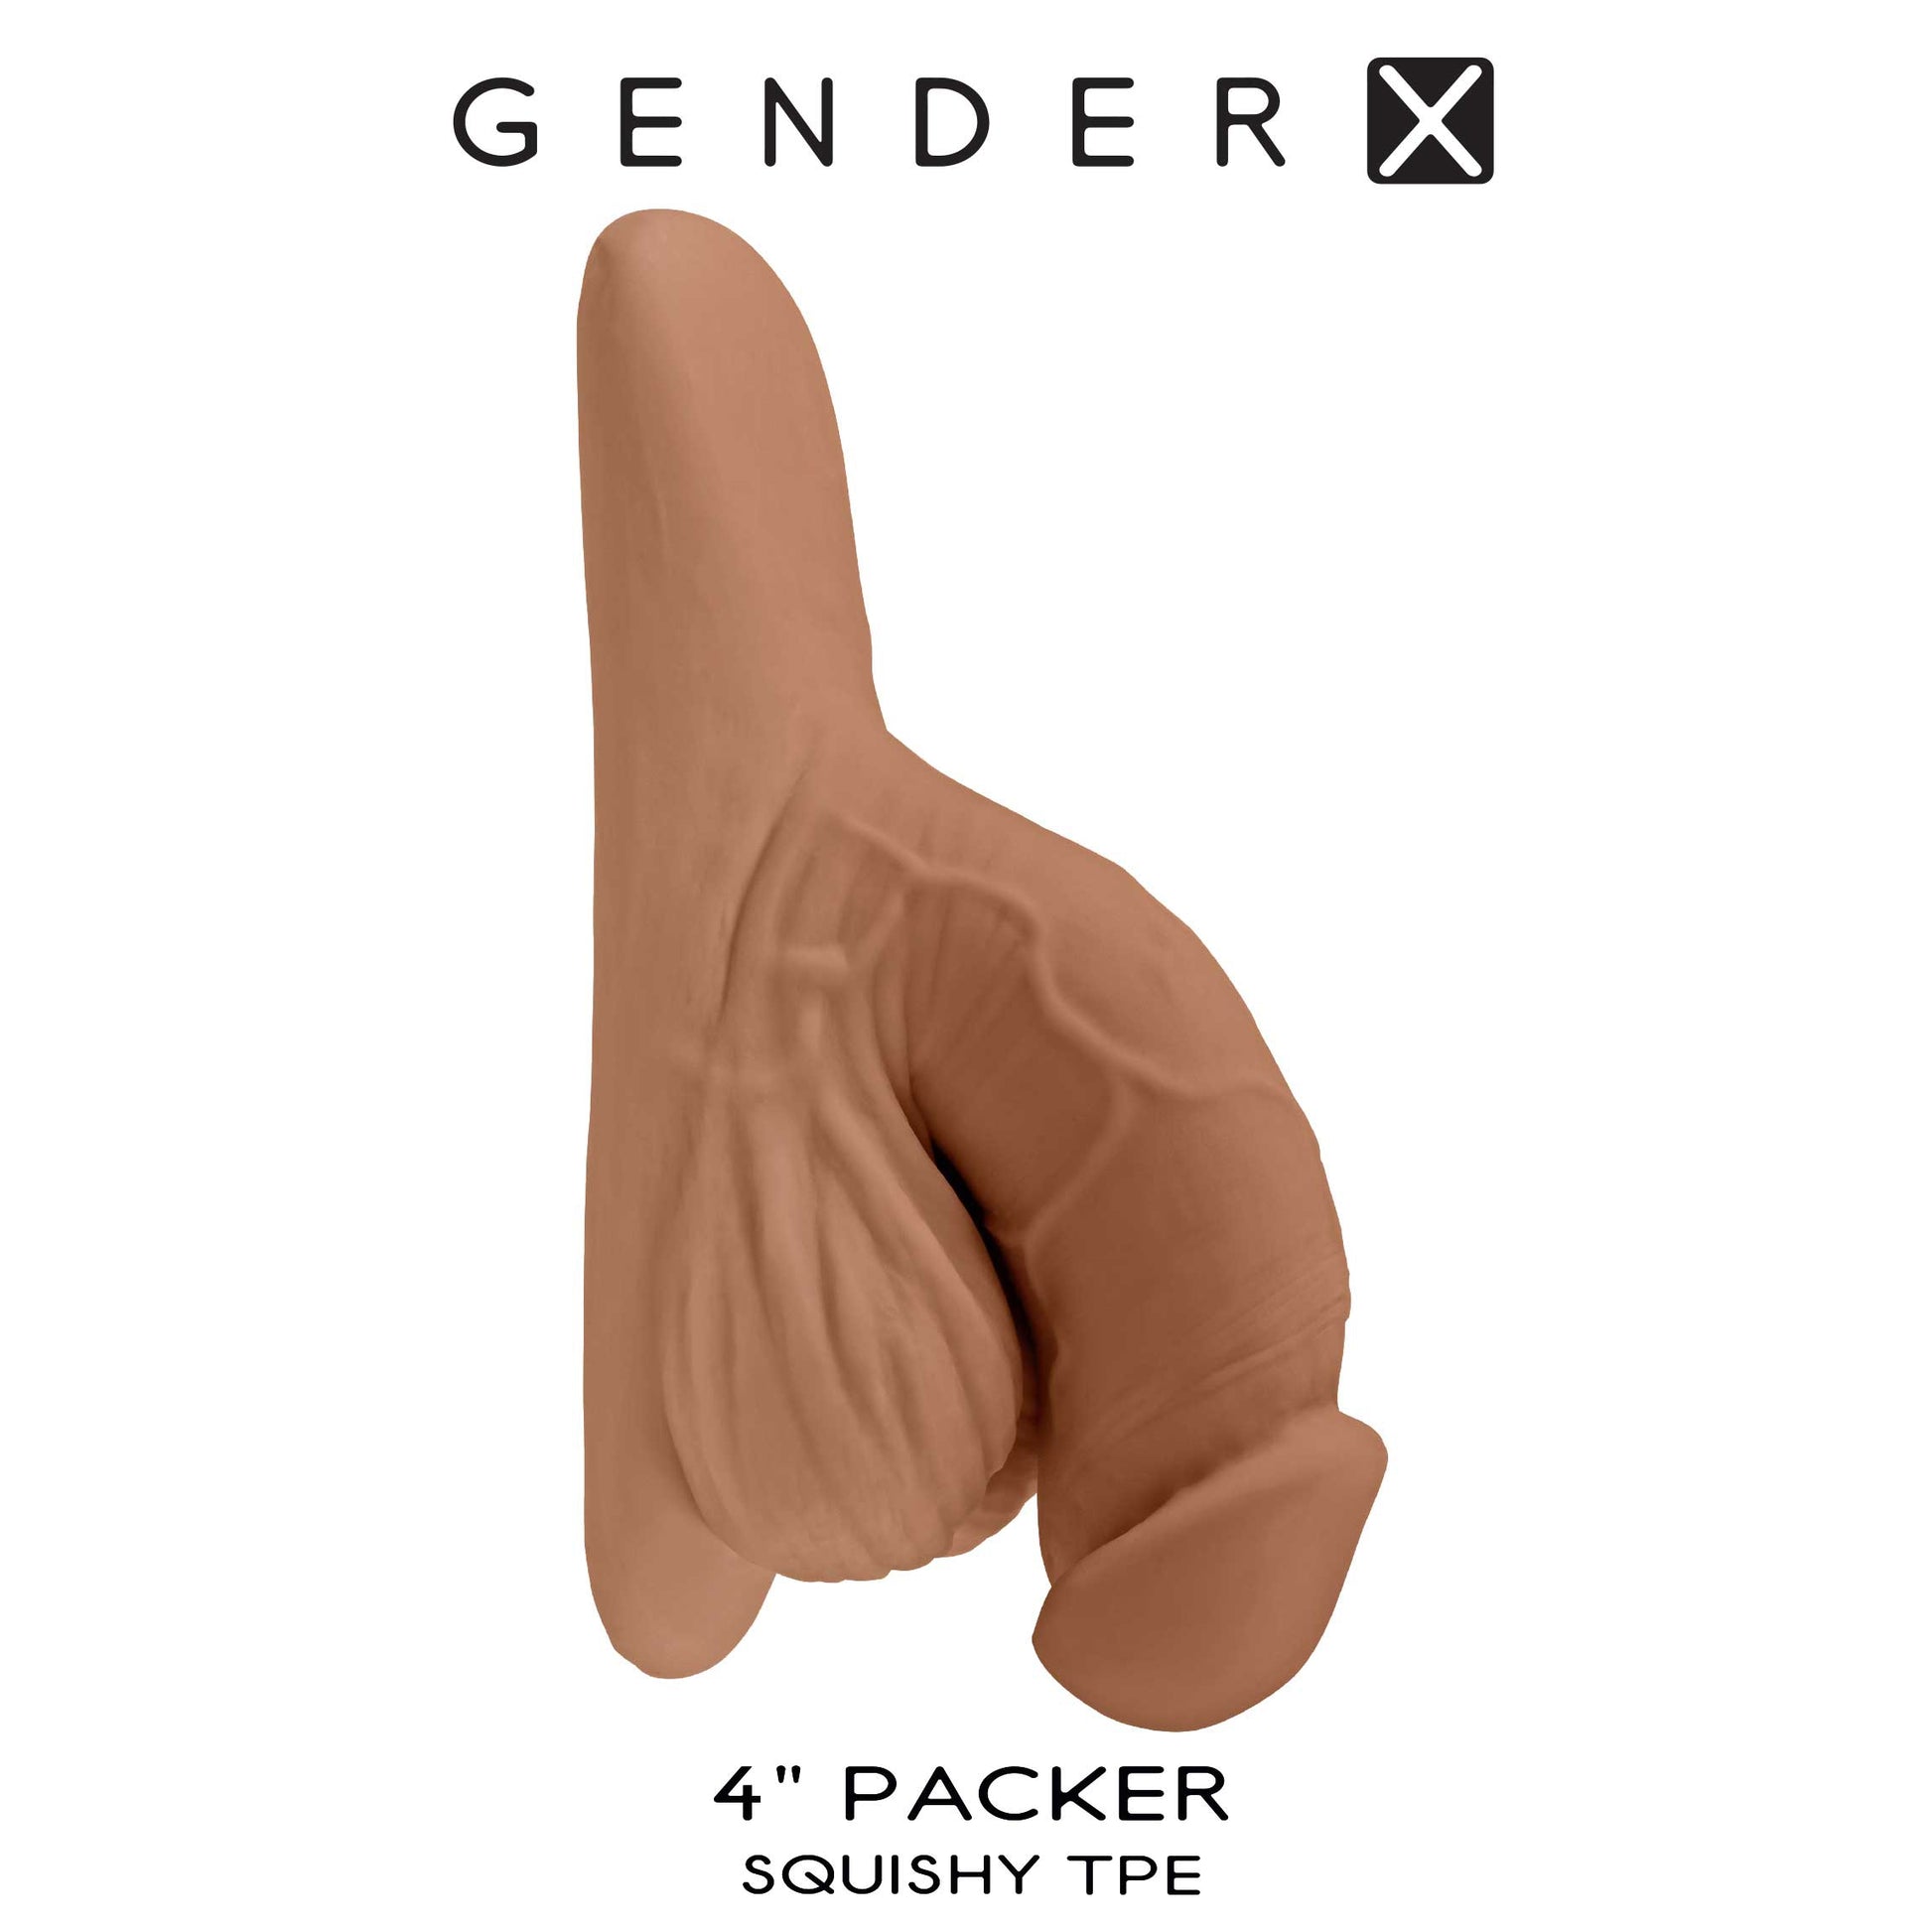 4 Inch Packer - Medium